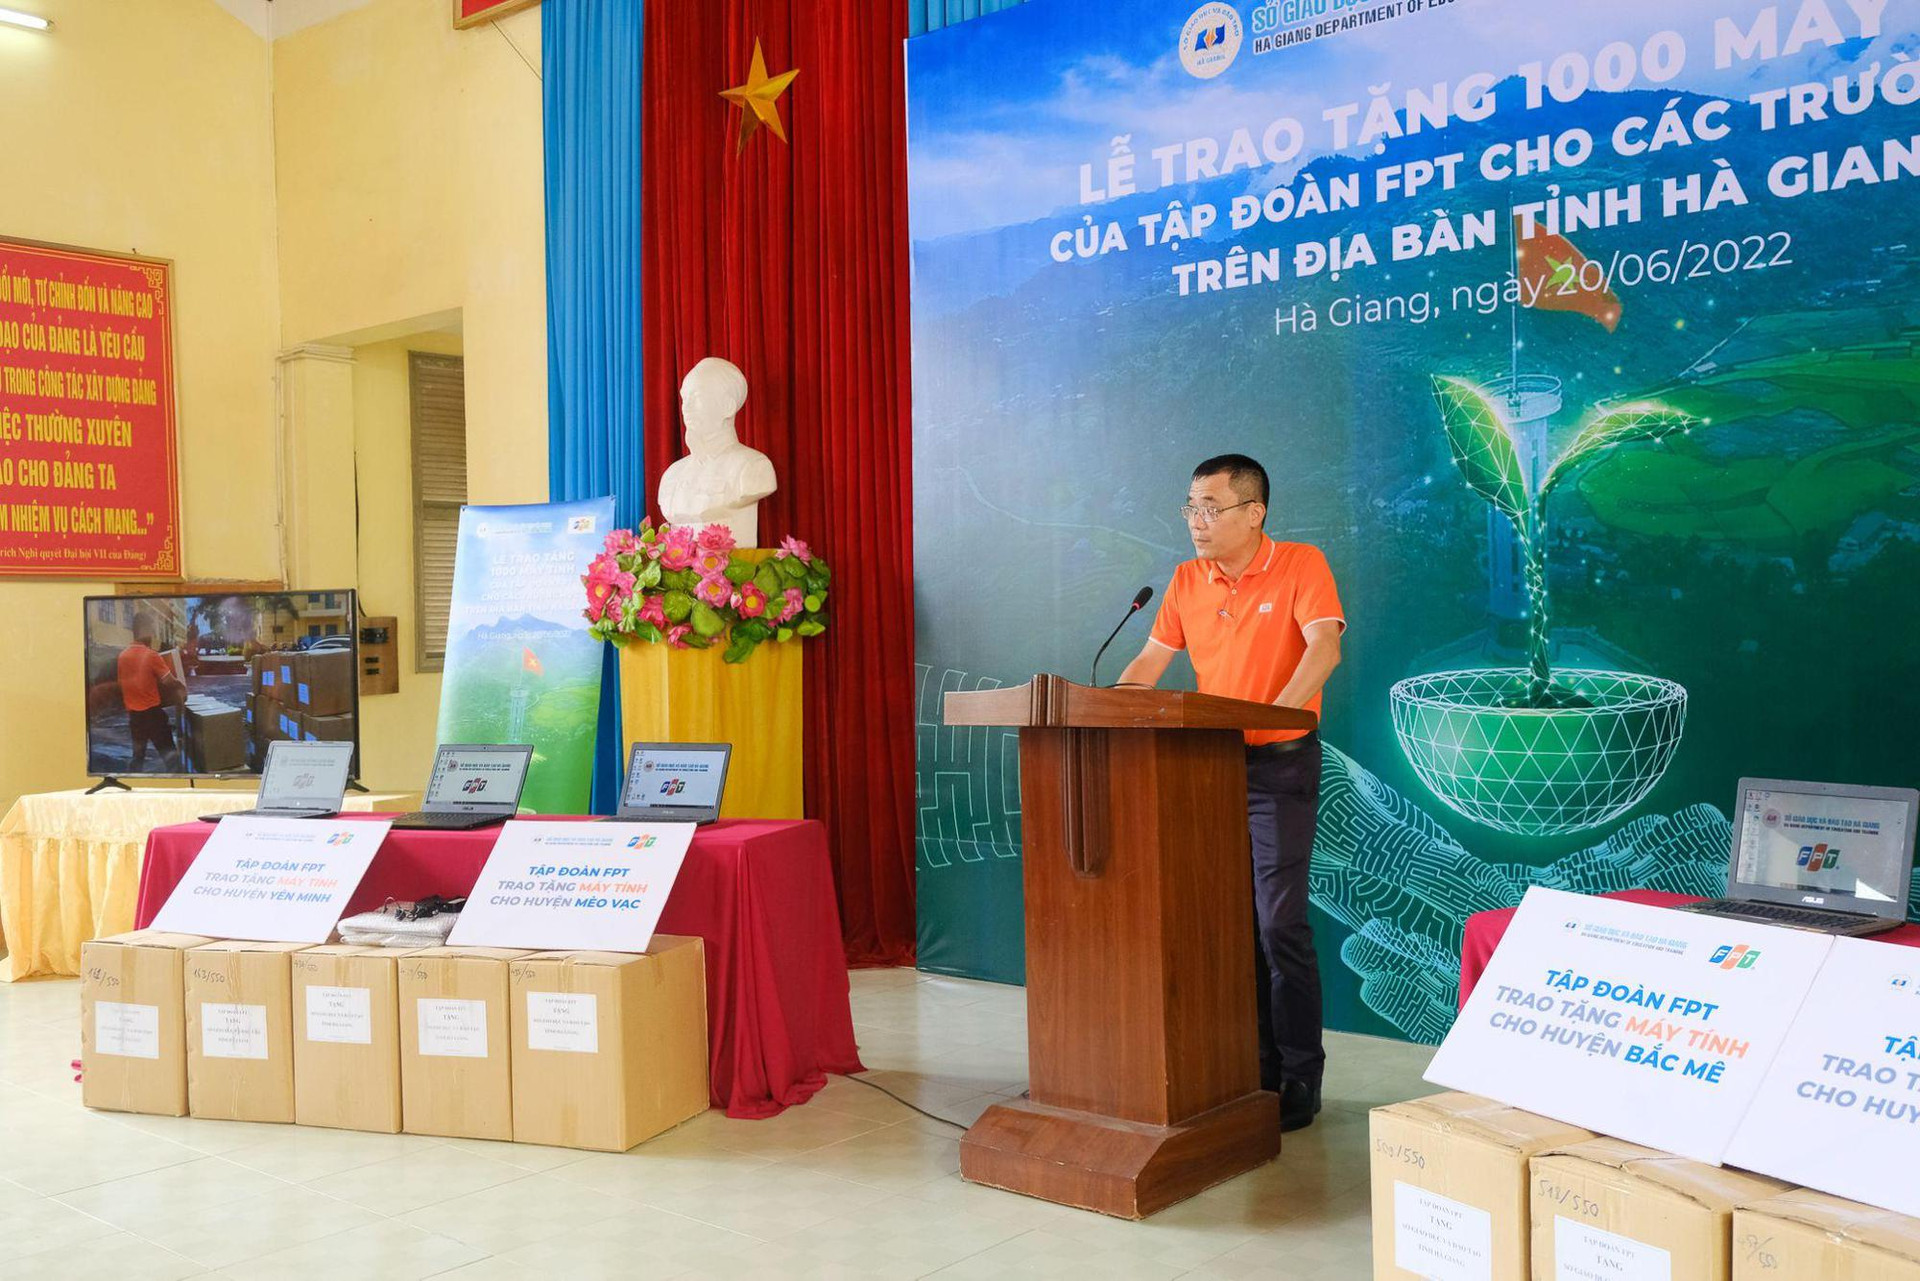 Thúc đẩy CĐS trong giáo dục. FPT trao tặng 1.000 máy tính cho học sinh tỉnh Hà Giang - Ảnh 2.